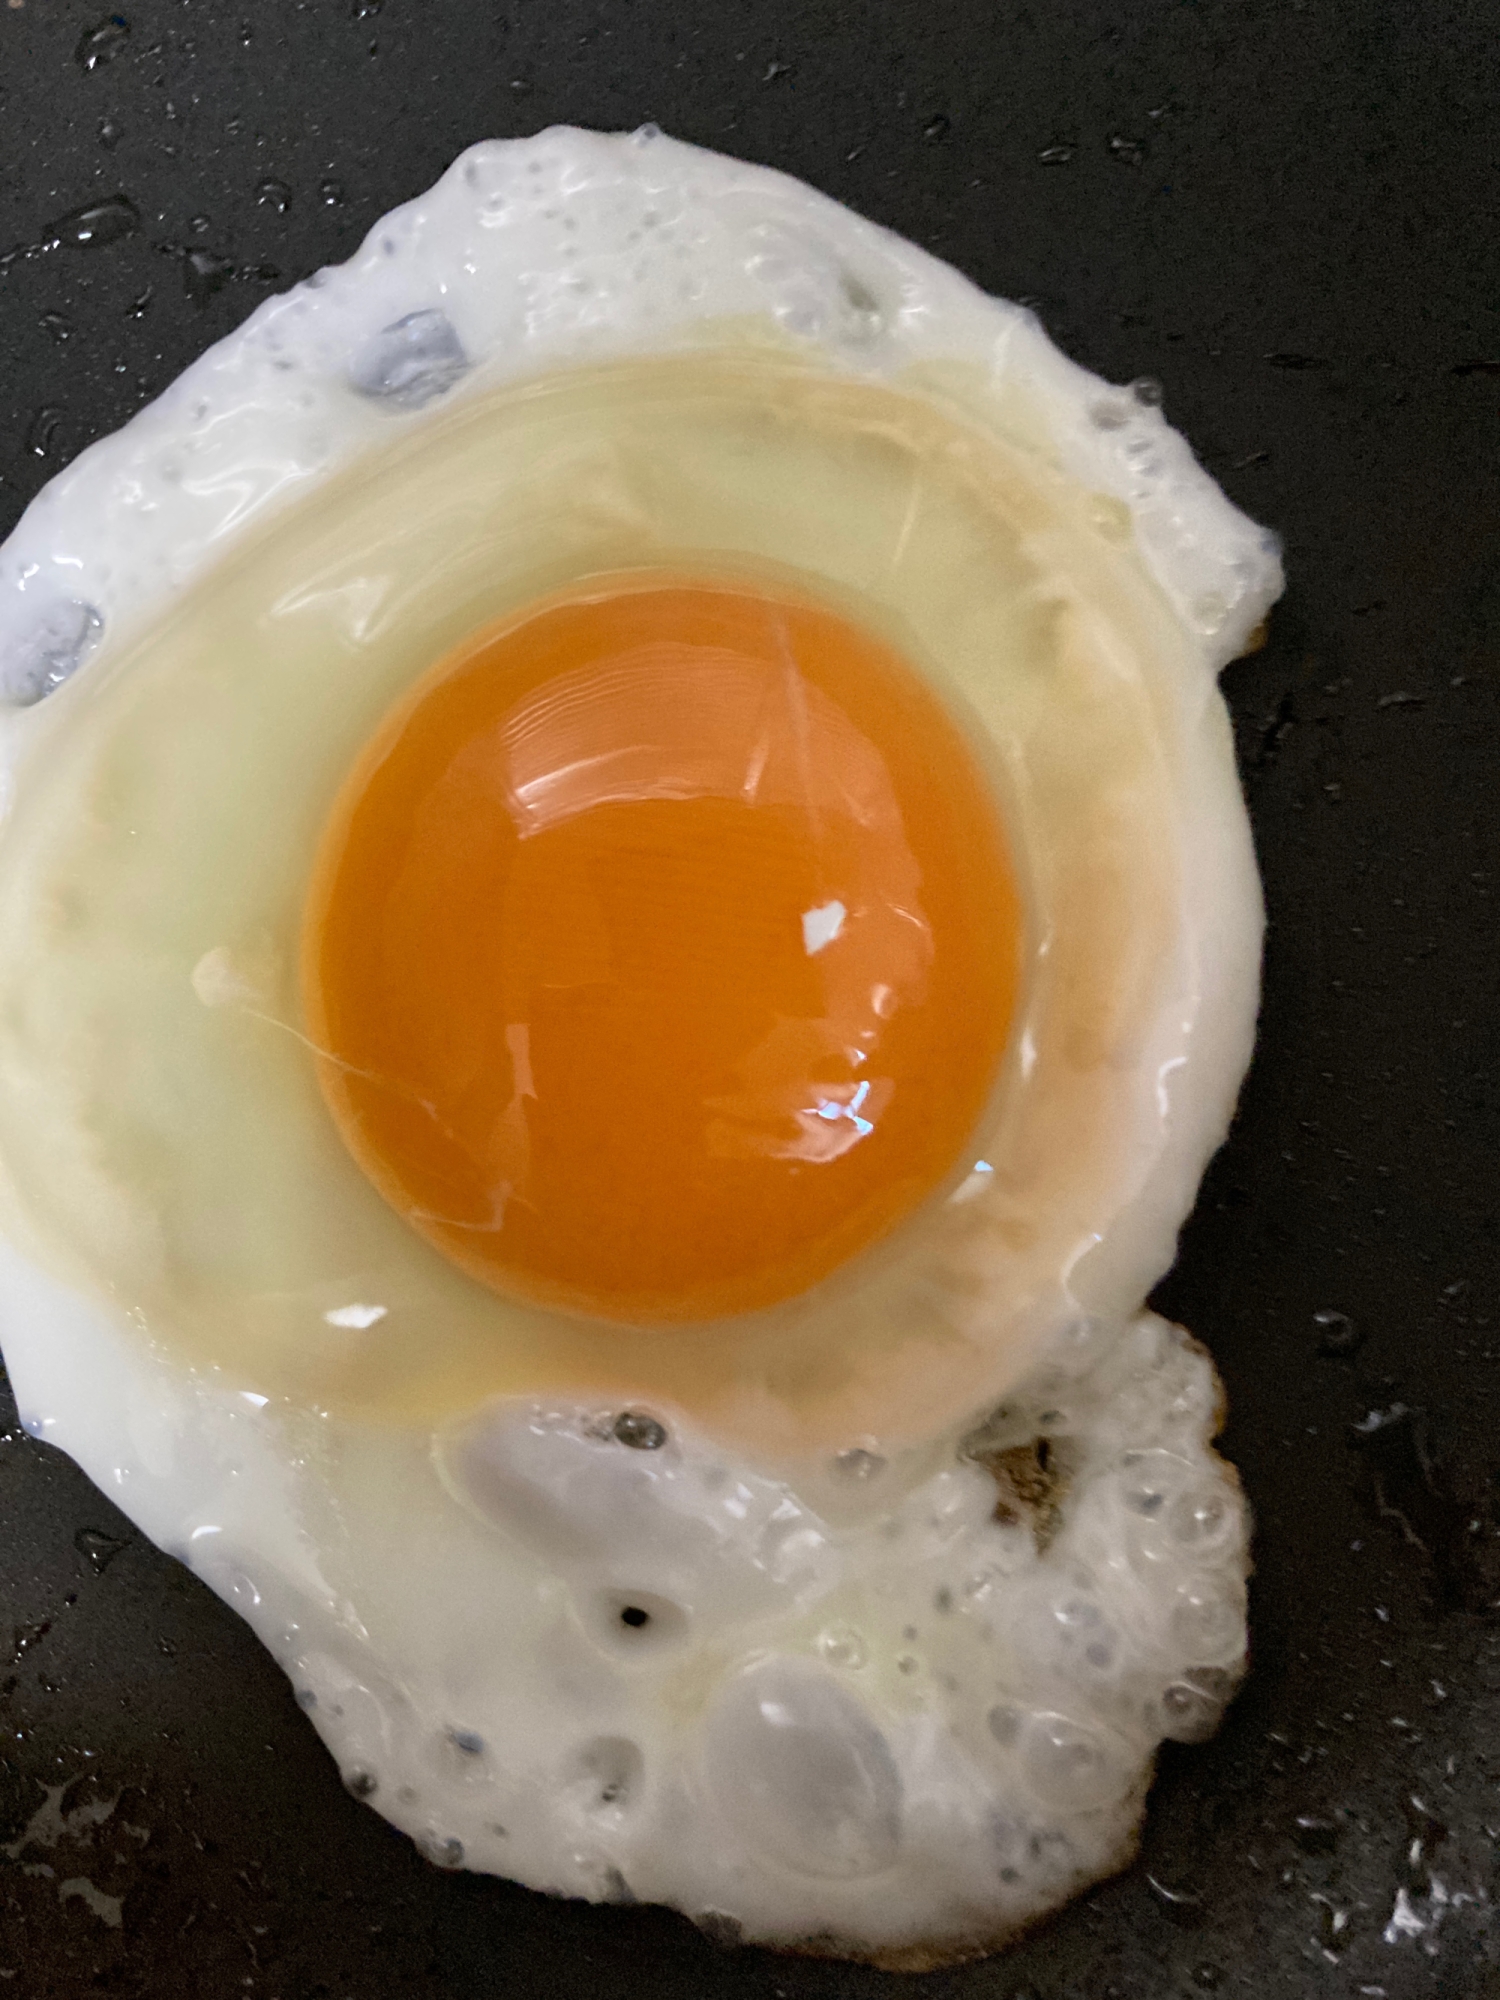 黄身がプリプリ半熟卵